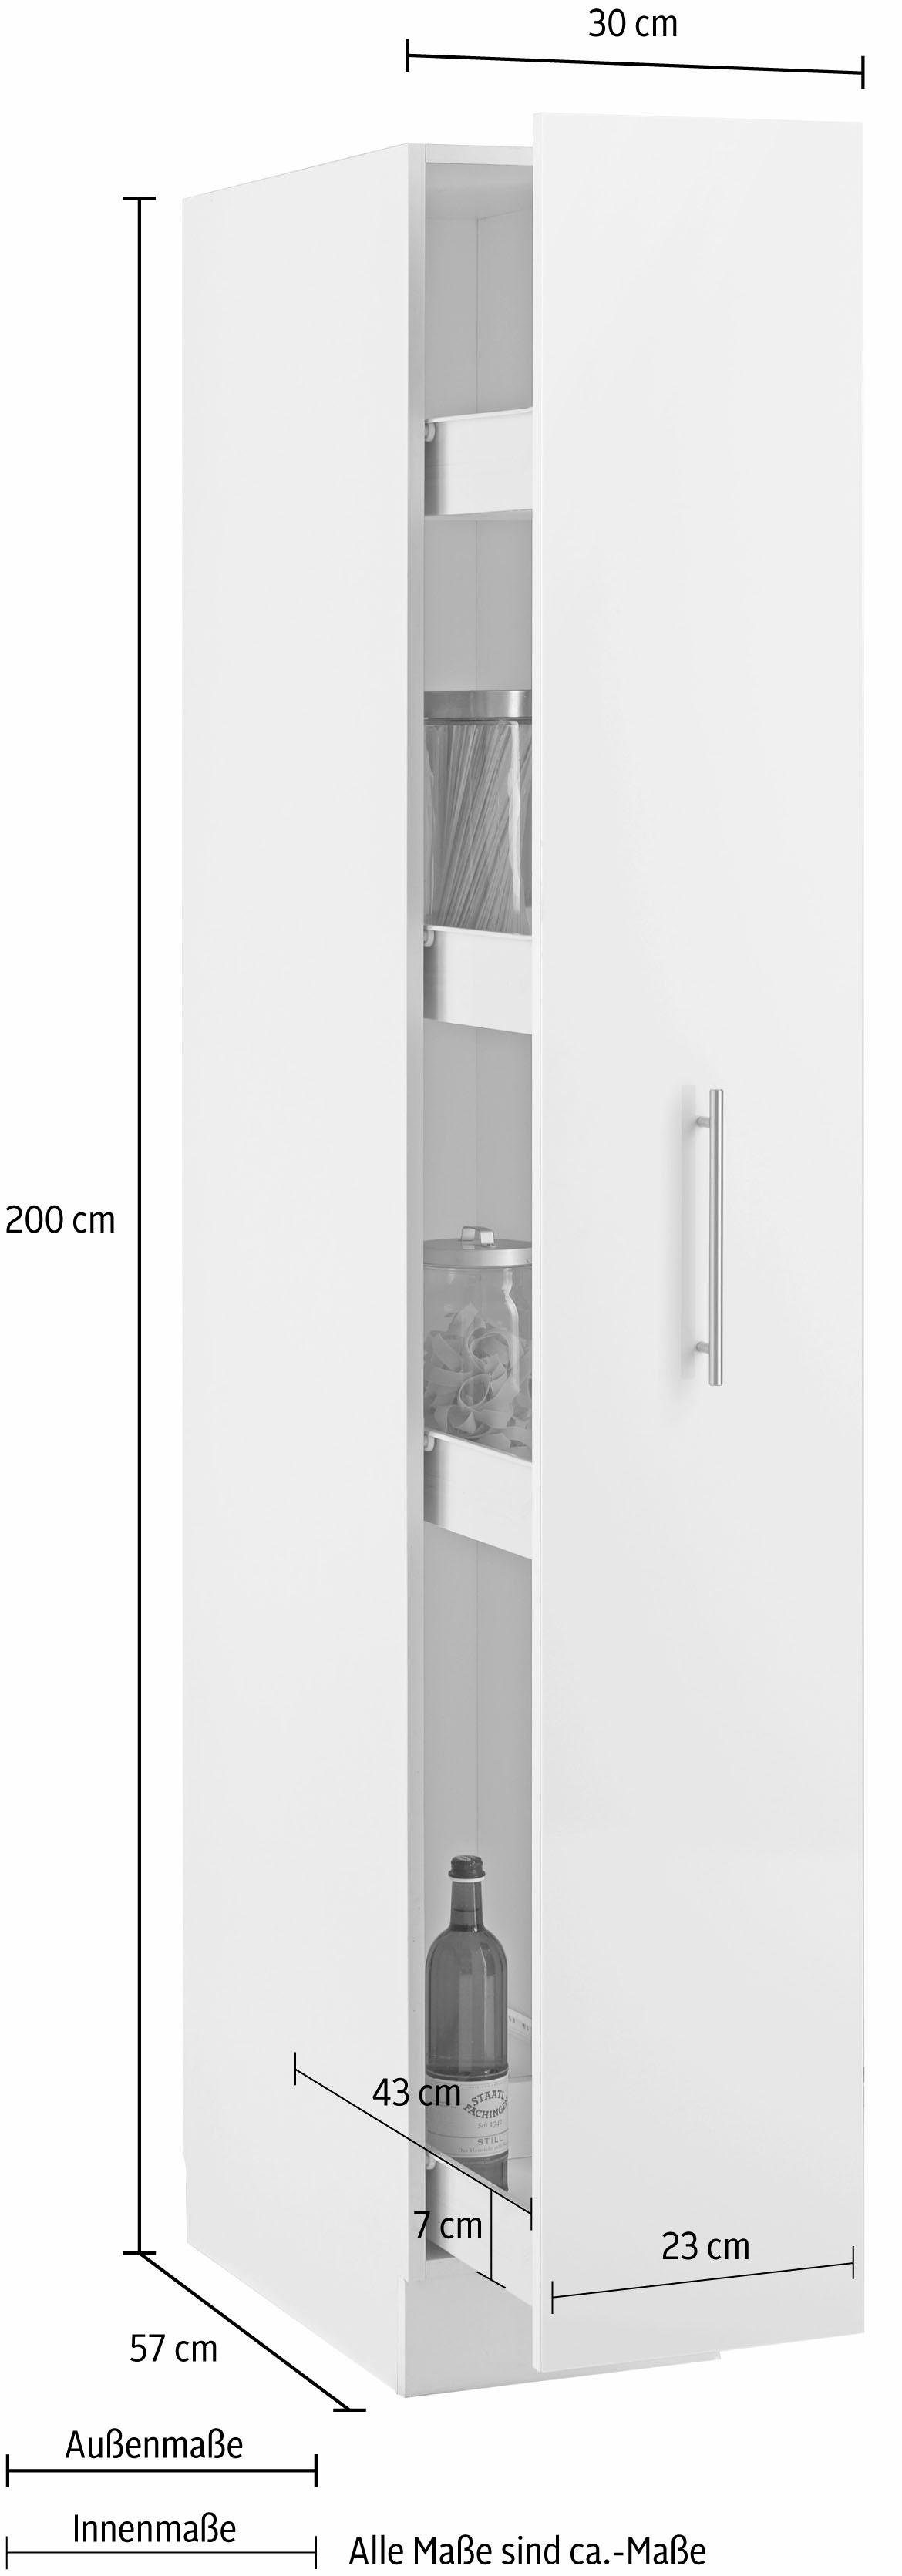 wiho Küchen Apothekerschrank Ablagefächern | Cali mit Korpus: Glanz, Front: Weiß 4 Auszug Weiß weiß